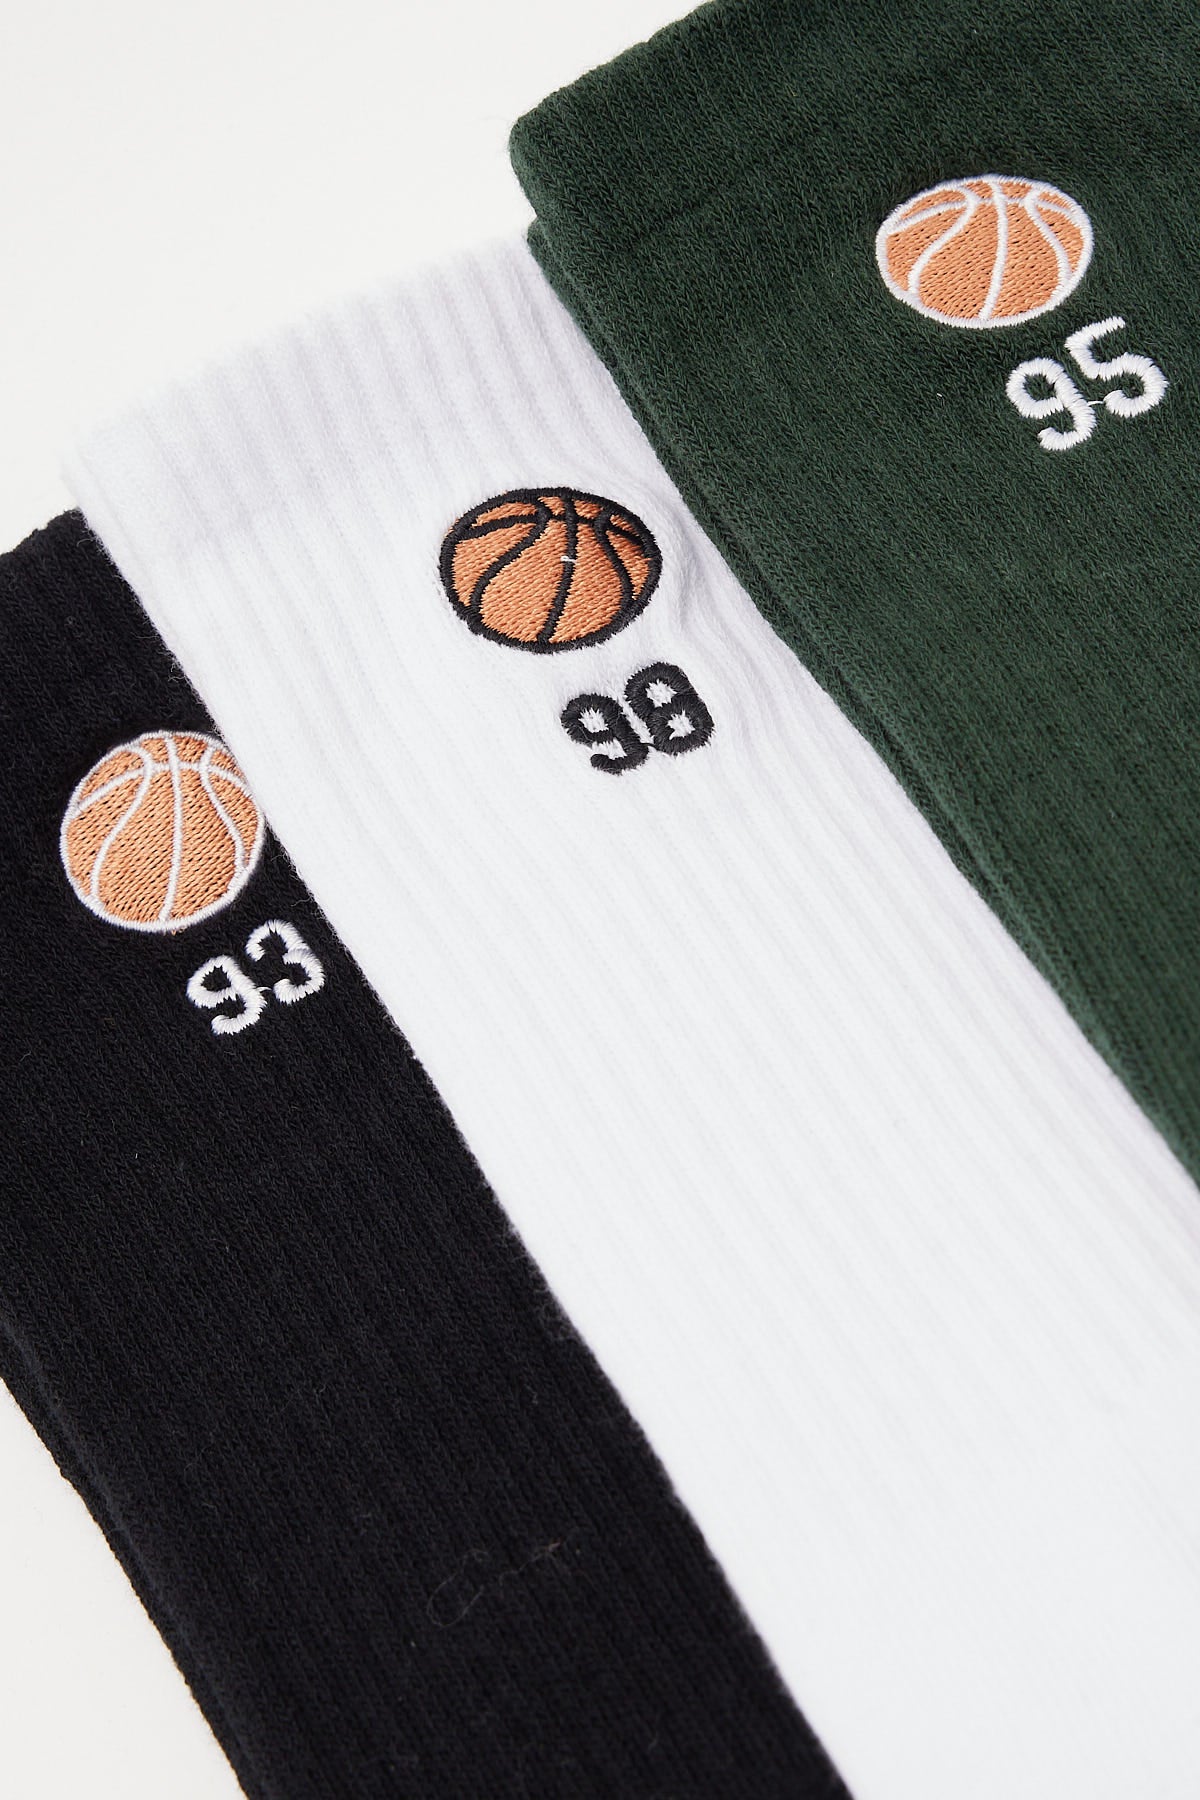 Common Need Basketball Sock 3 Pack Black/Green/White